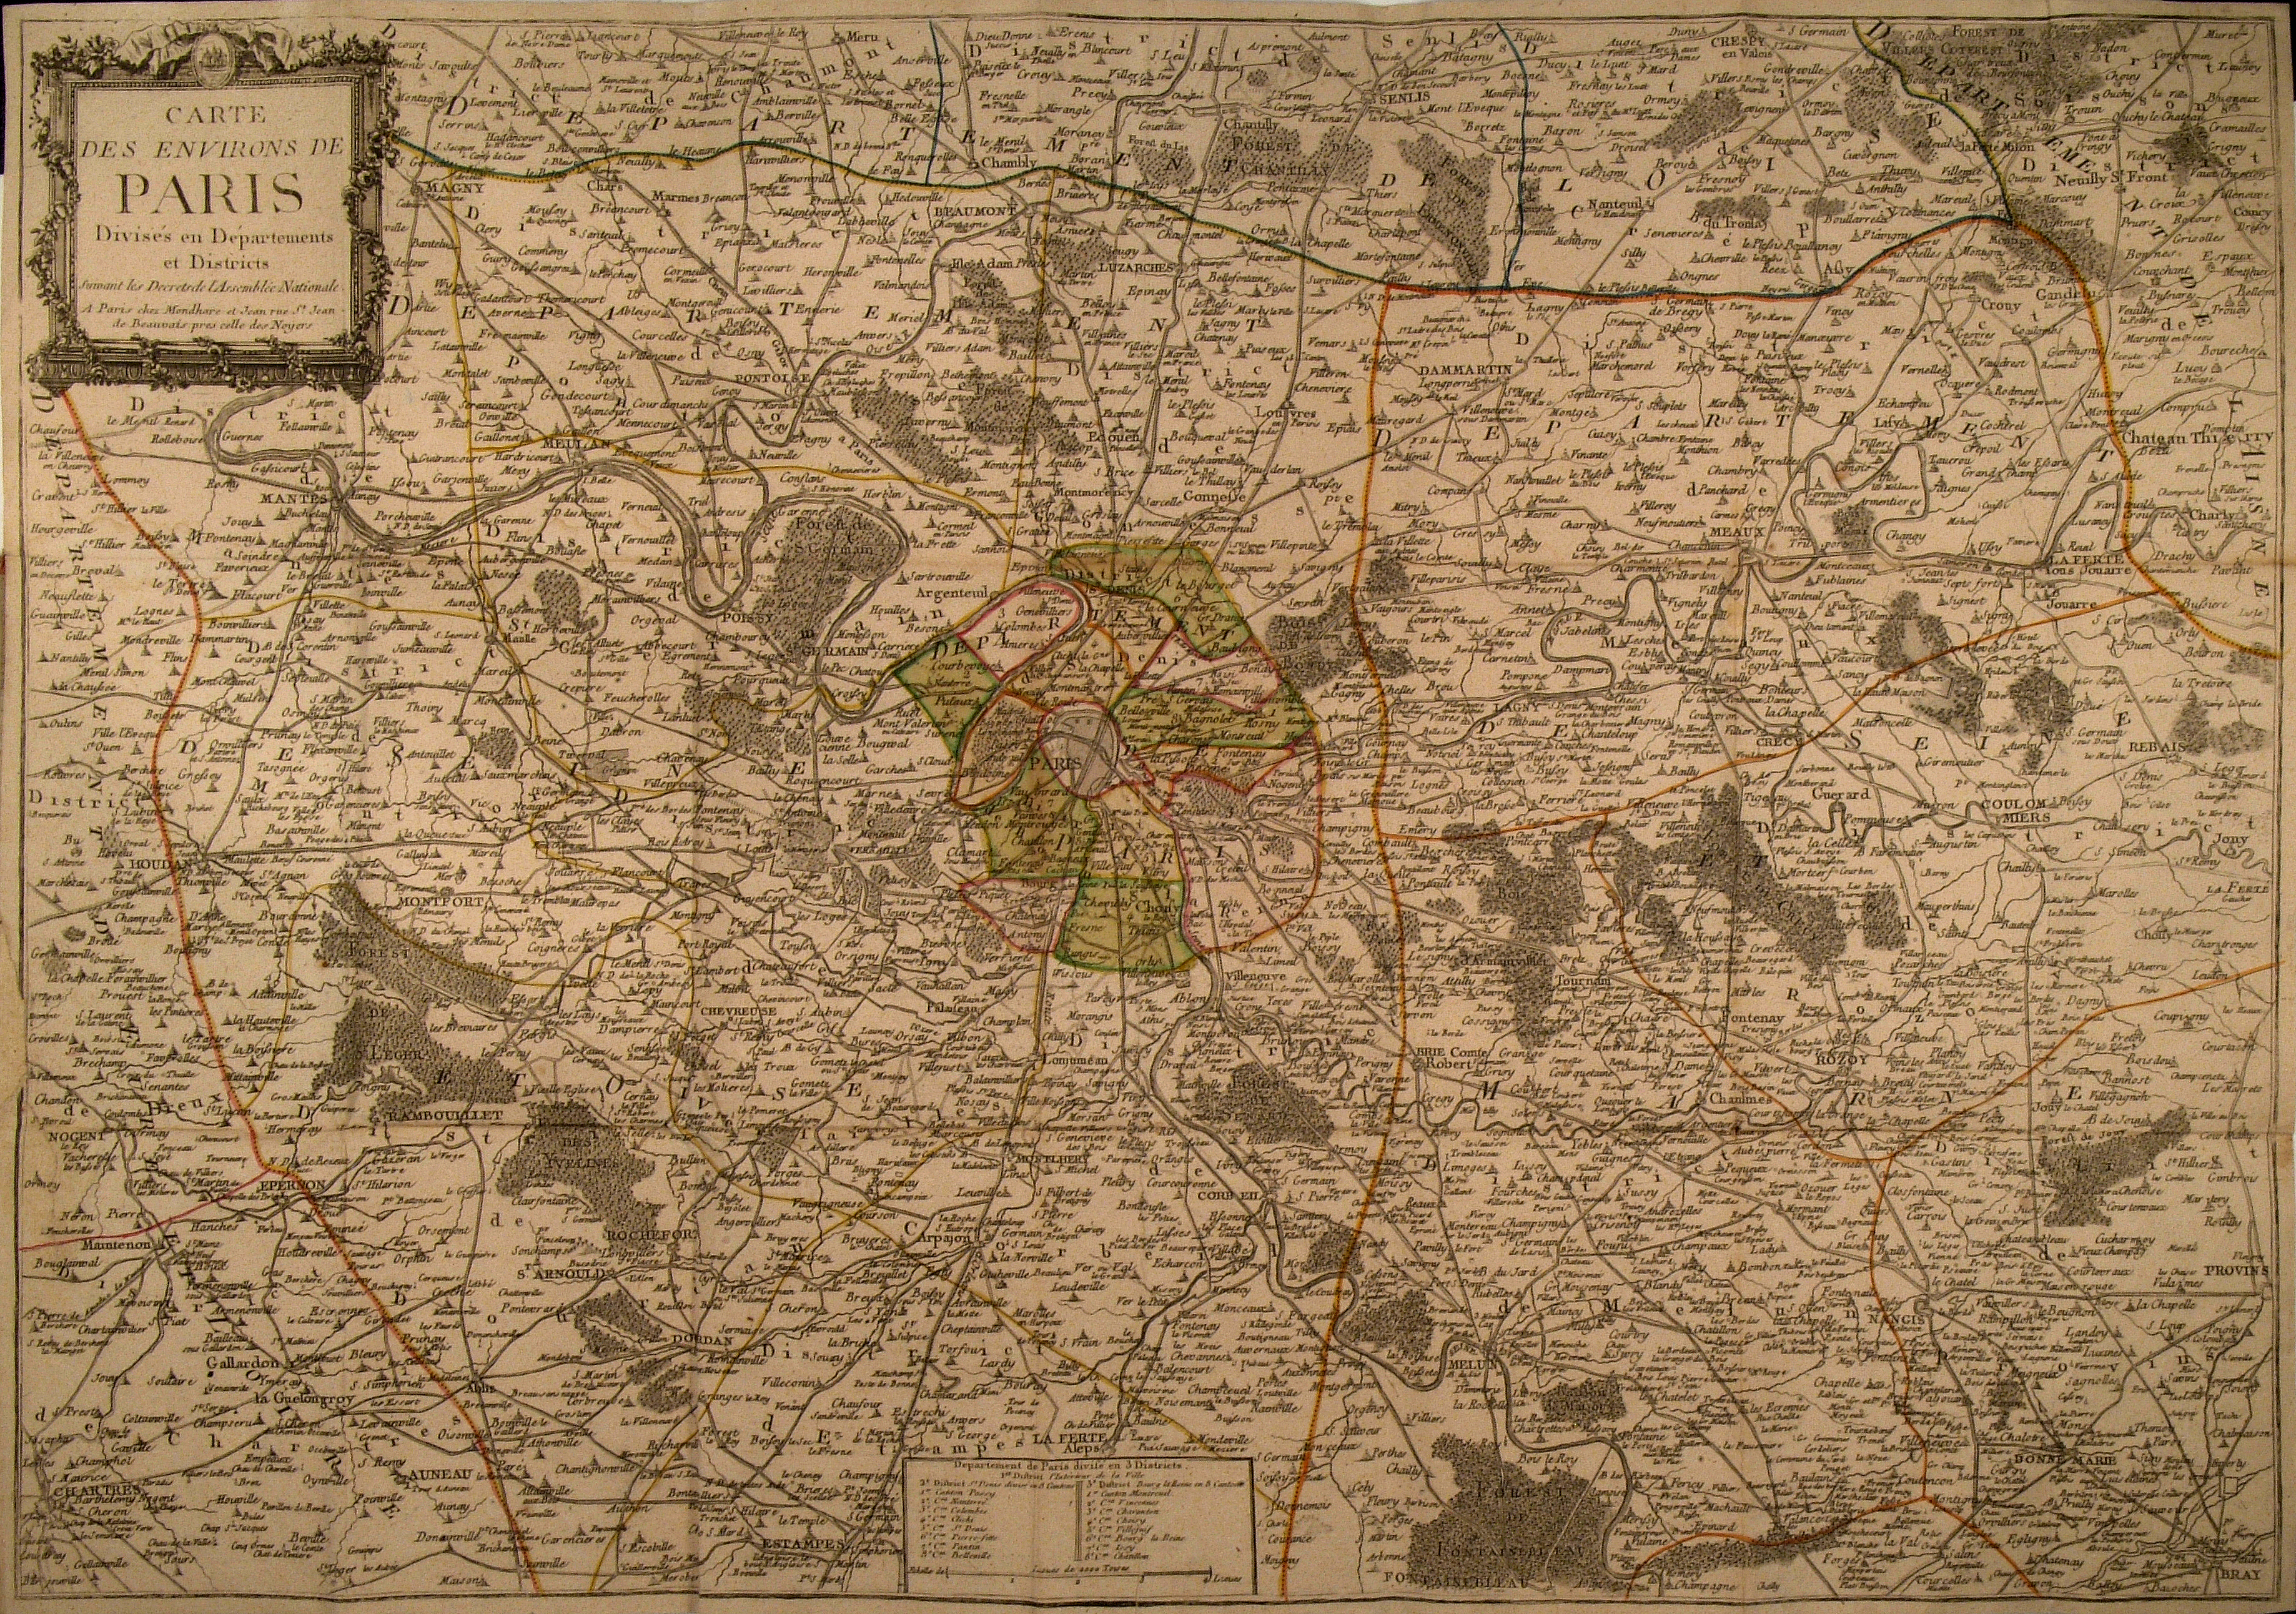 Carte des Environs de Paris Divisés en Départements et Districts suivant les Décrets de l'Assemblée Nationale. [Ca 1792].